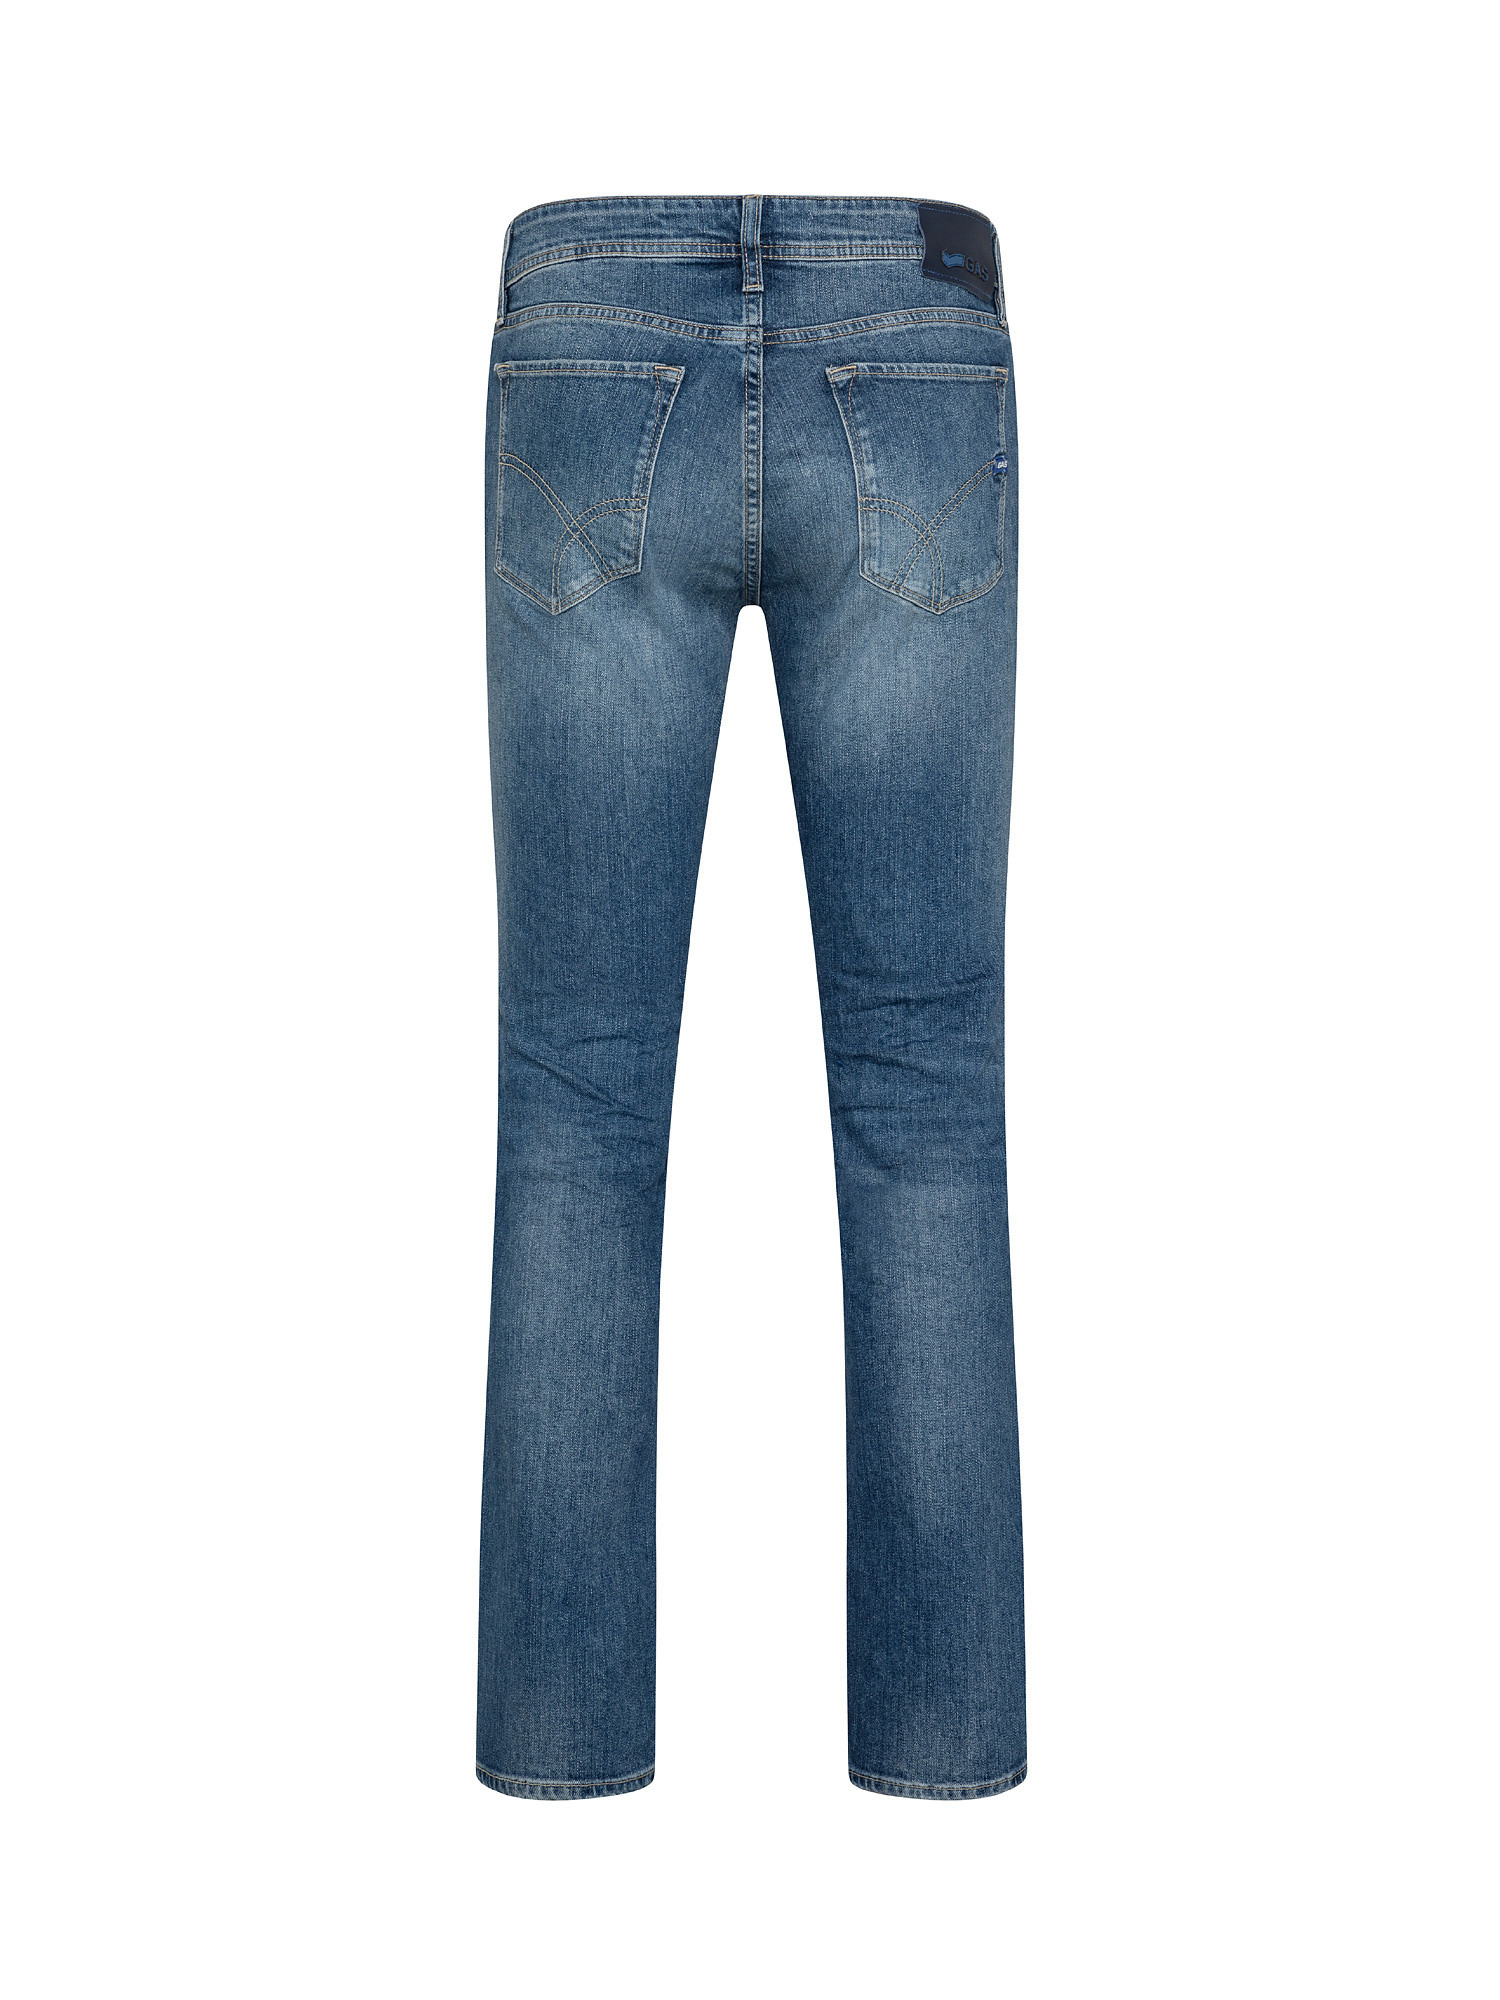 Jeans slim elasticizzati, Denim, large image number 1